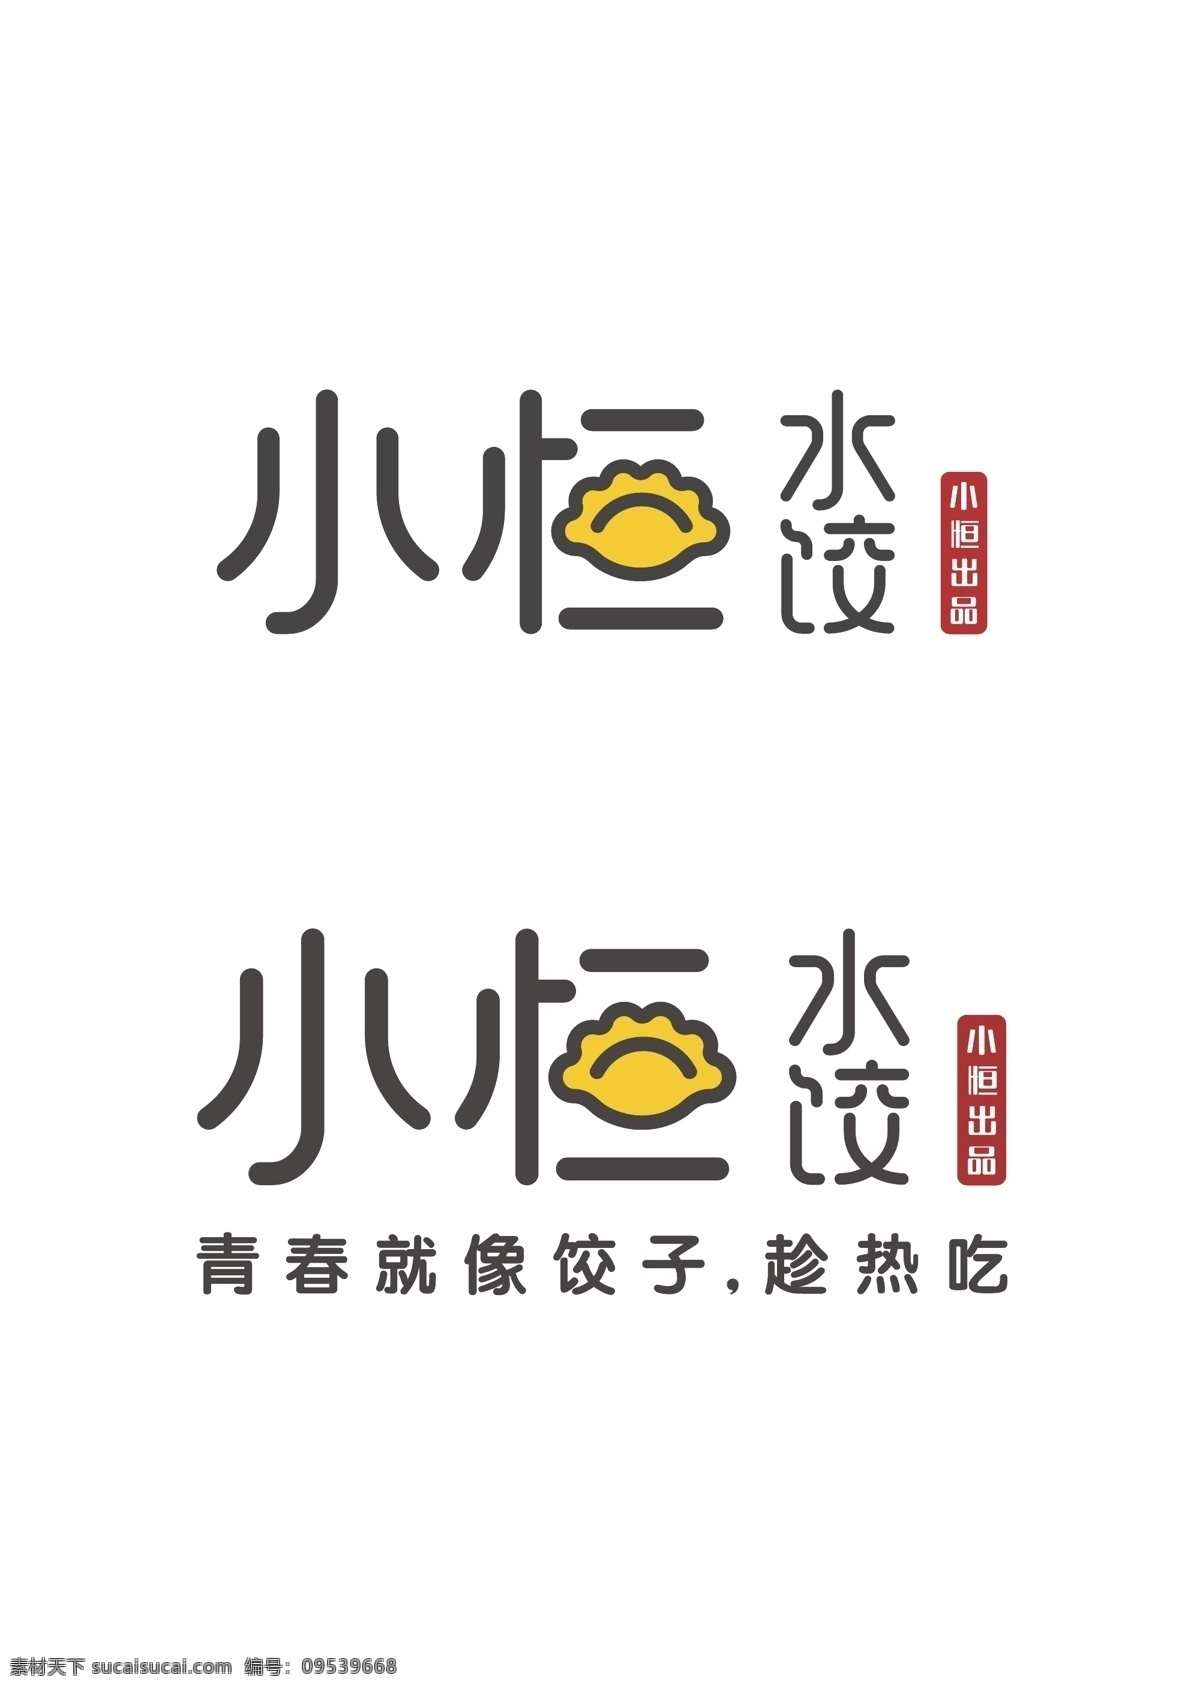 小 恒 水饺 logo ai文件 矢量 可编辑 餐饮 饺子 移动界面设计 客户端界面